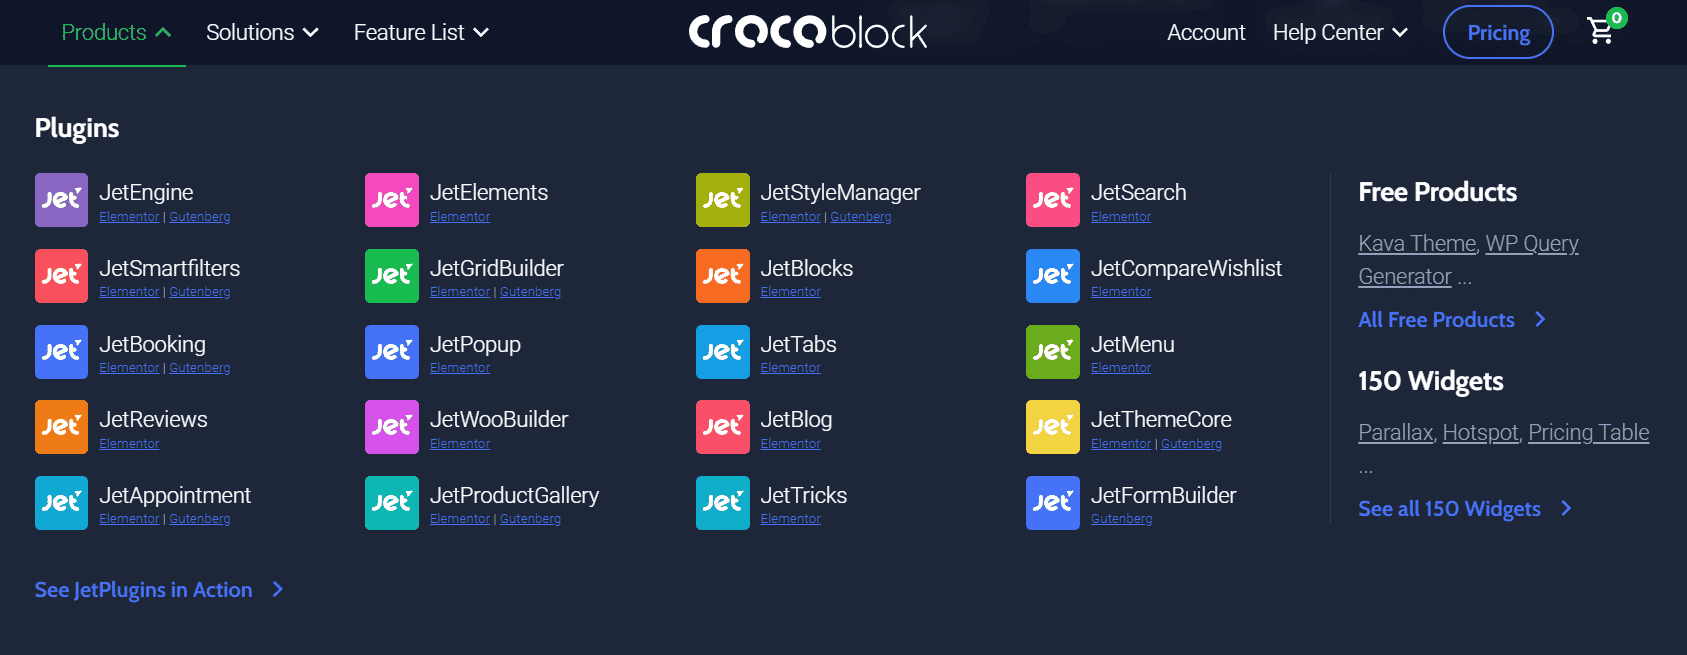 croco block